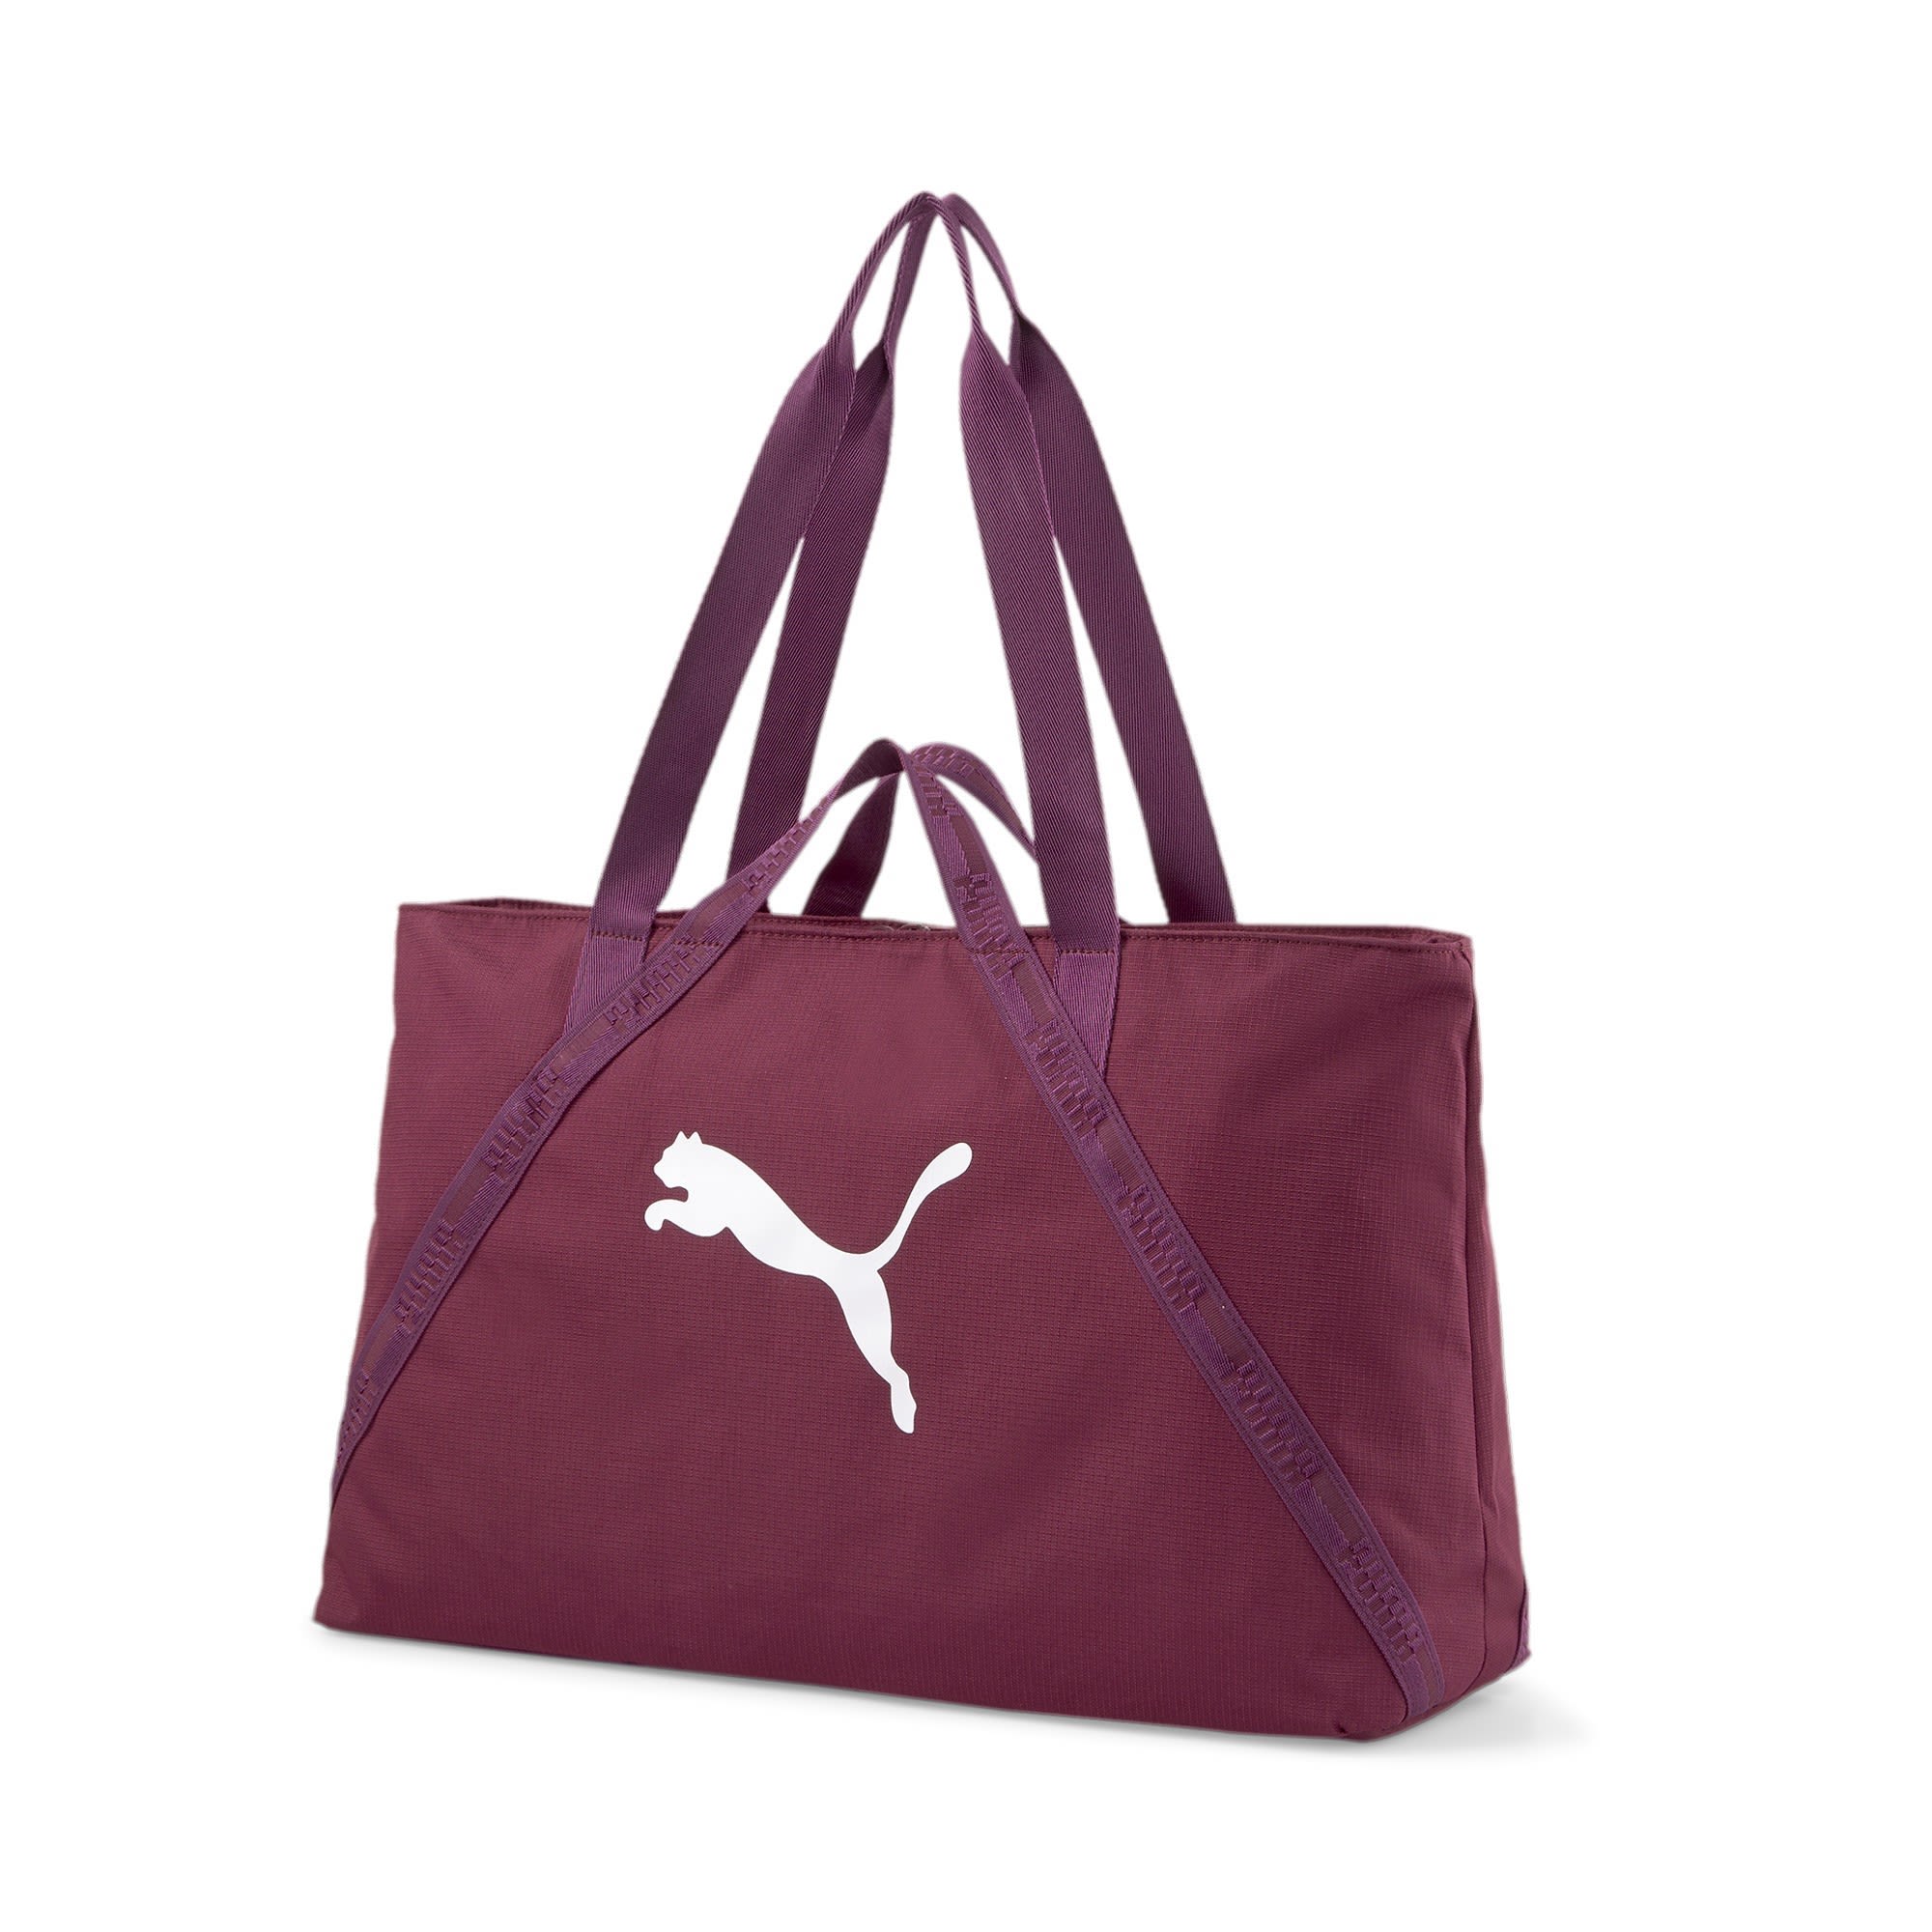 Puma AT Essentials Shopper Rot- Female Sporttaschen- Grsse 23l - Farbe Grape Wine